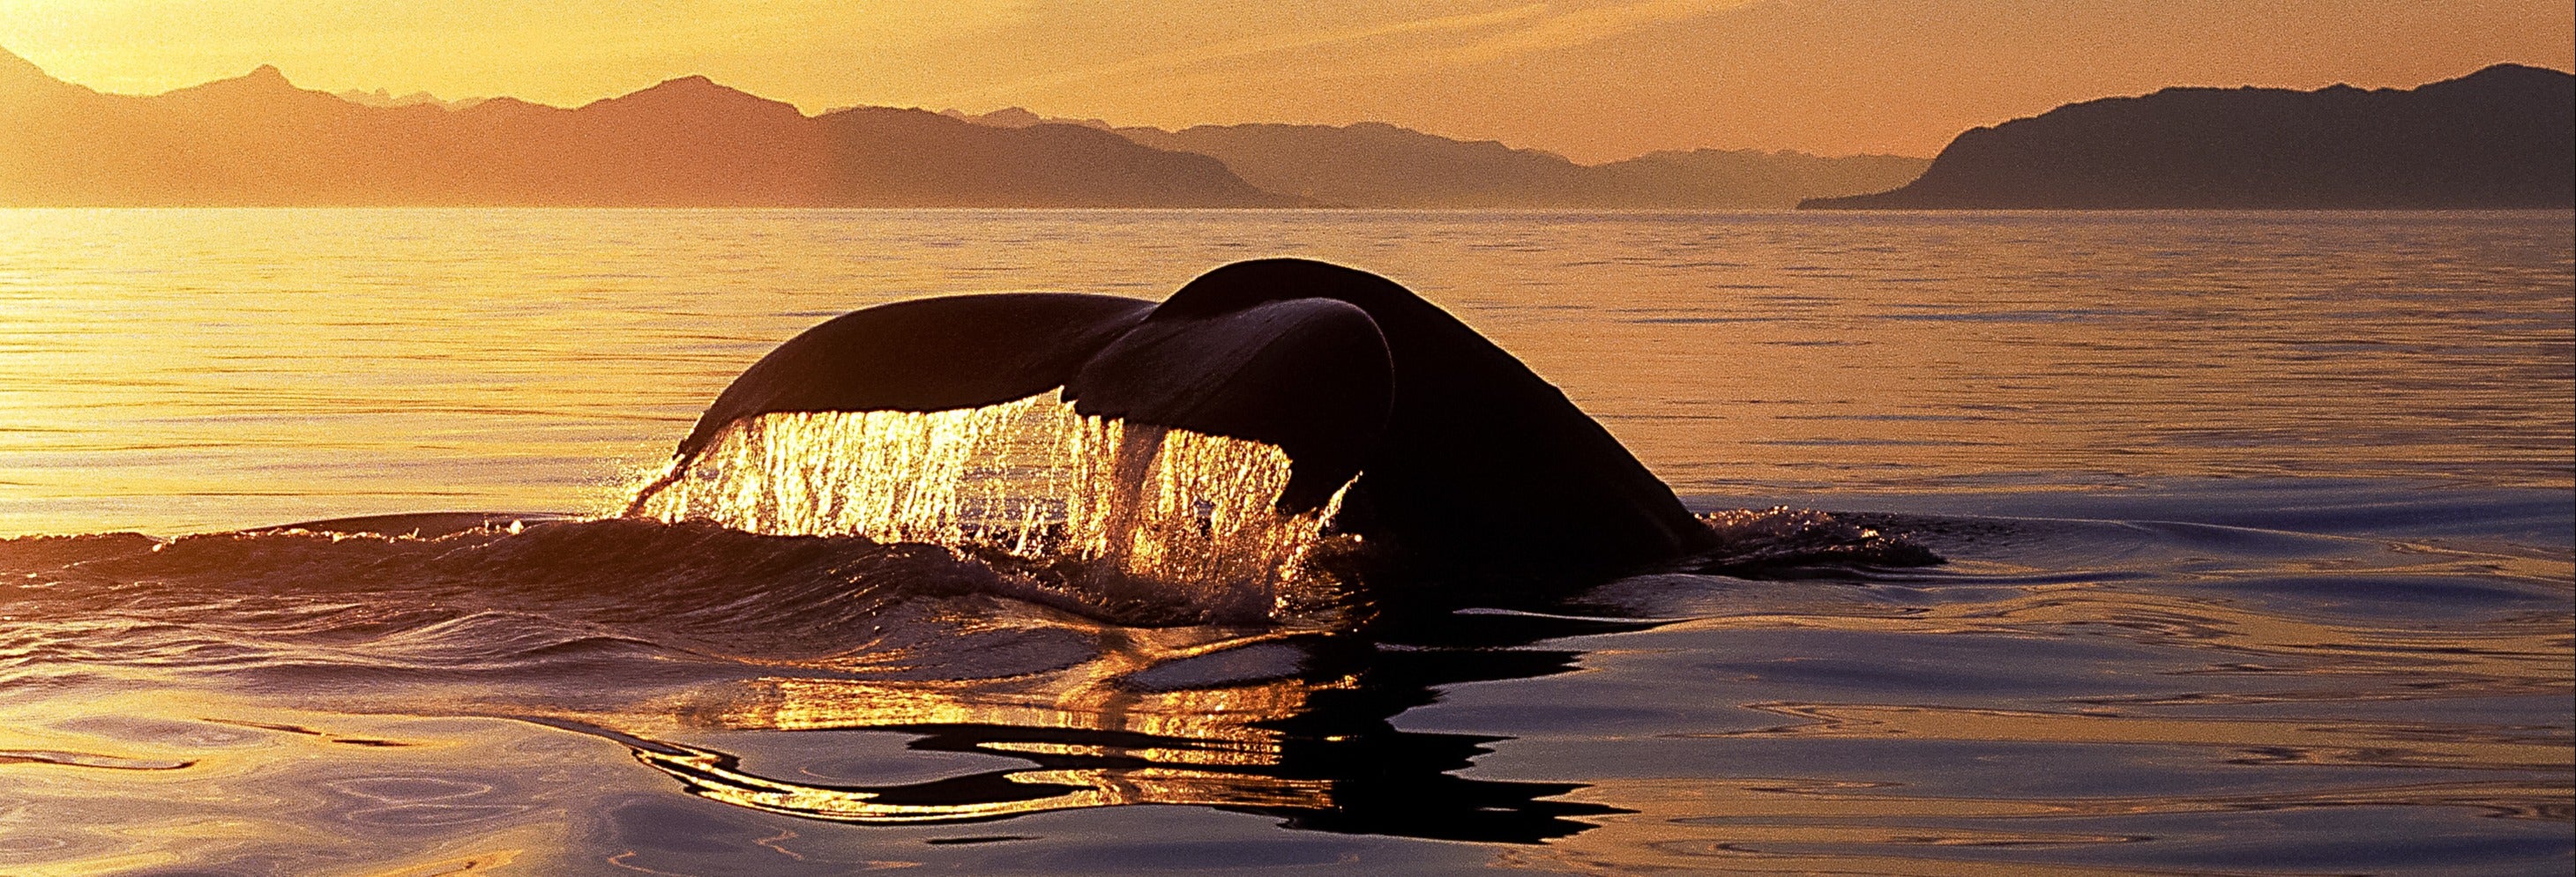 Avistamiento de ballenas y delfines bajo el sol de medianoche